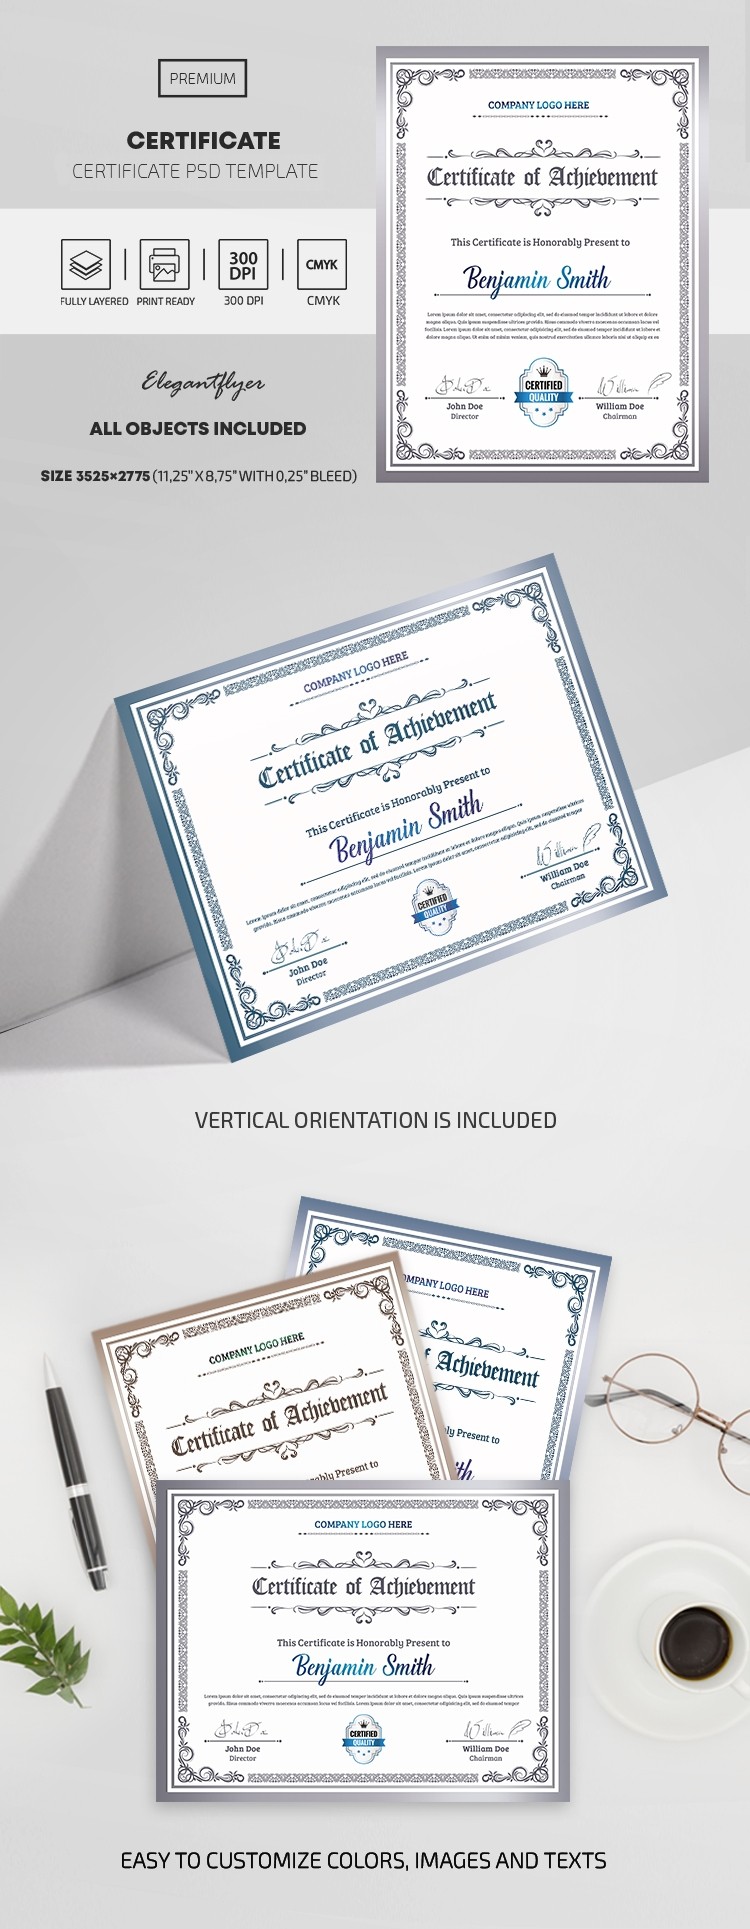 Certificat de formation by ElegantFlyer